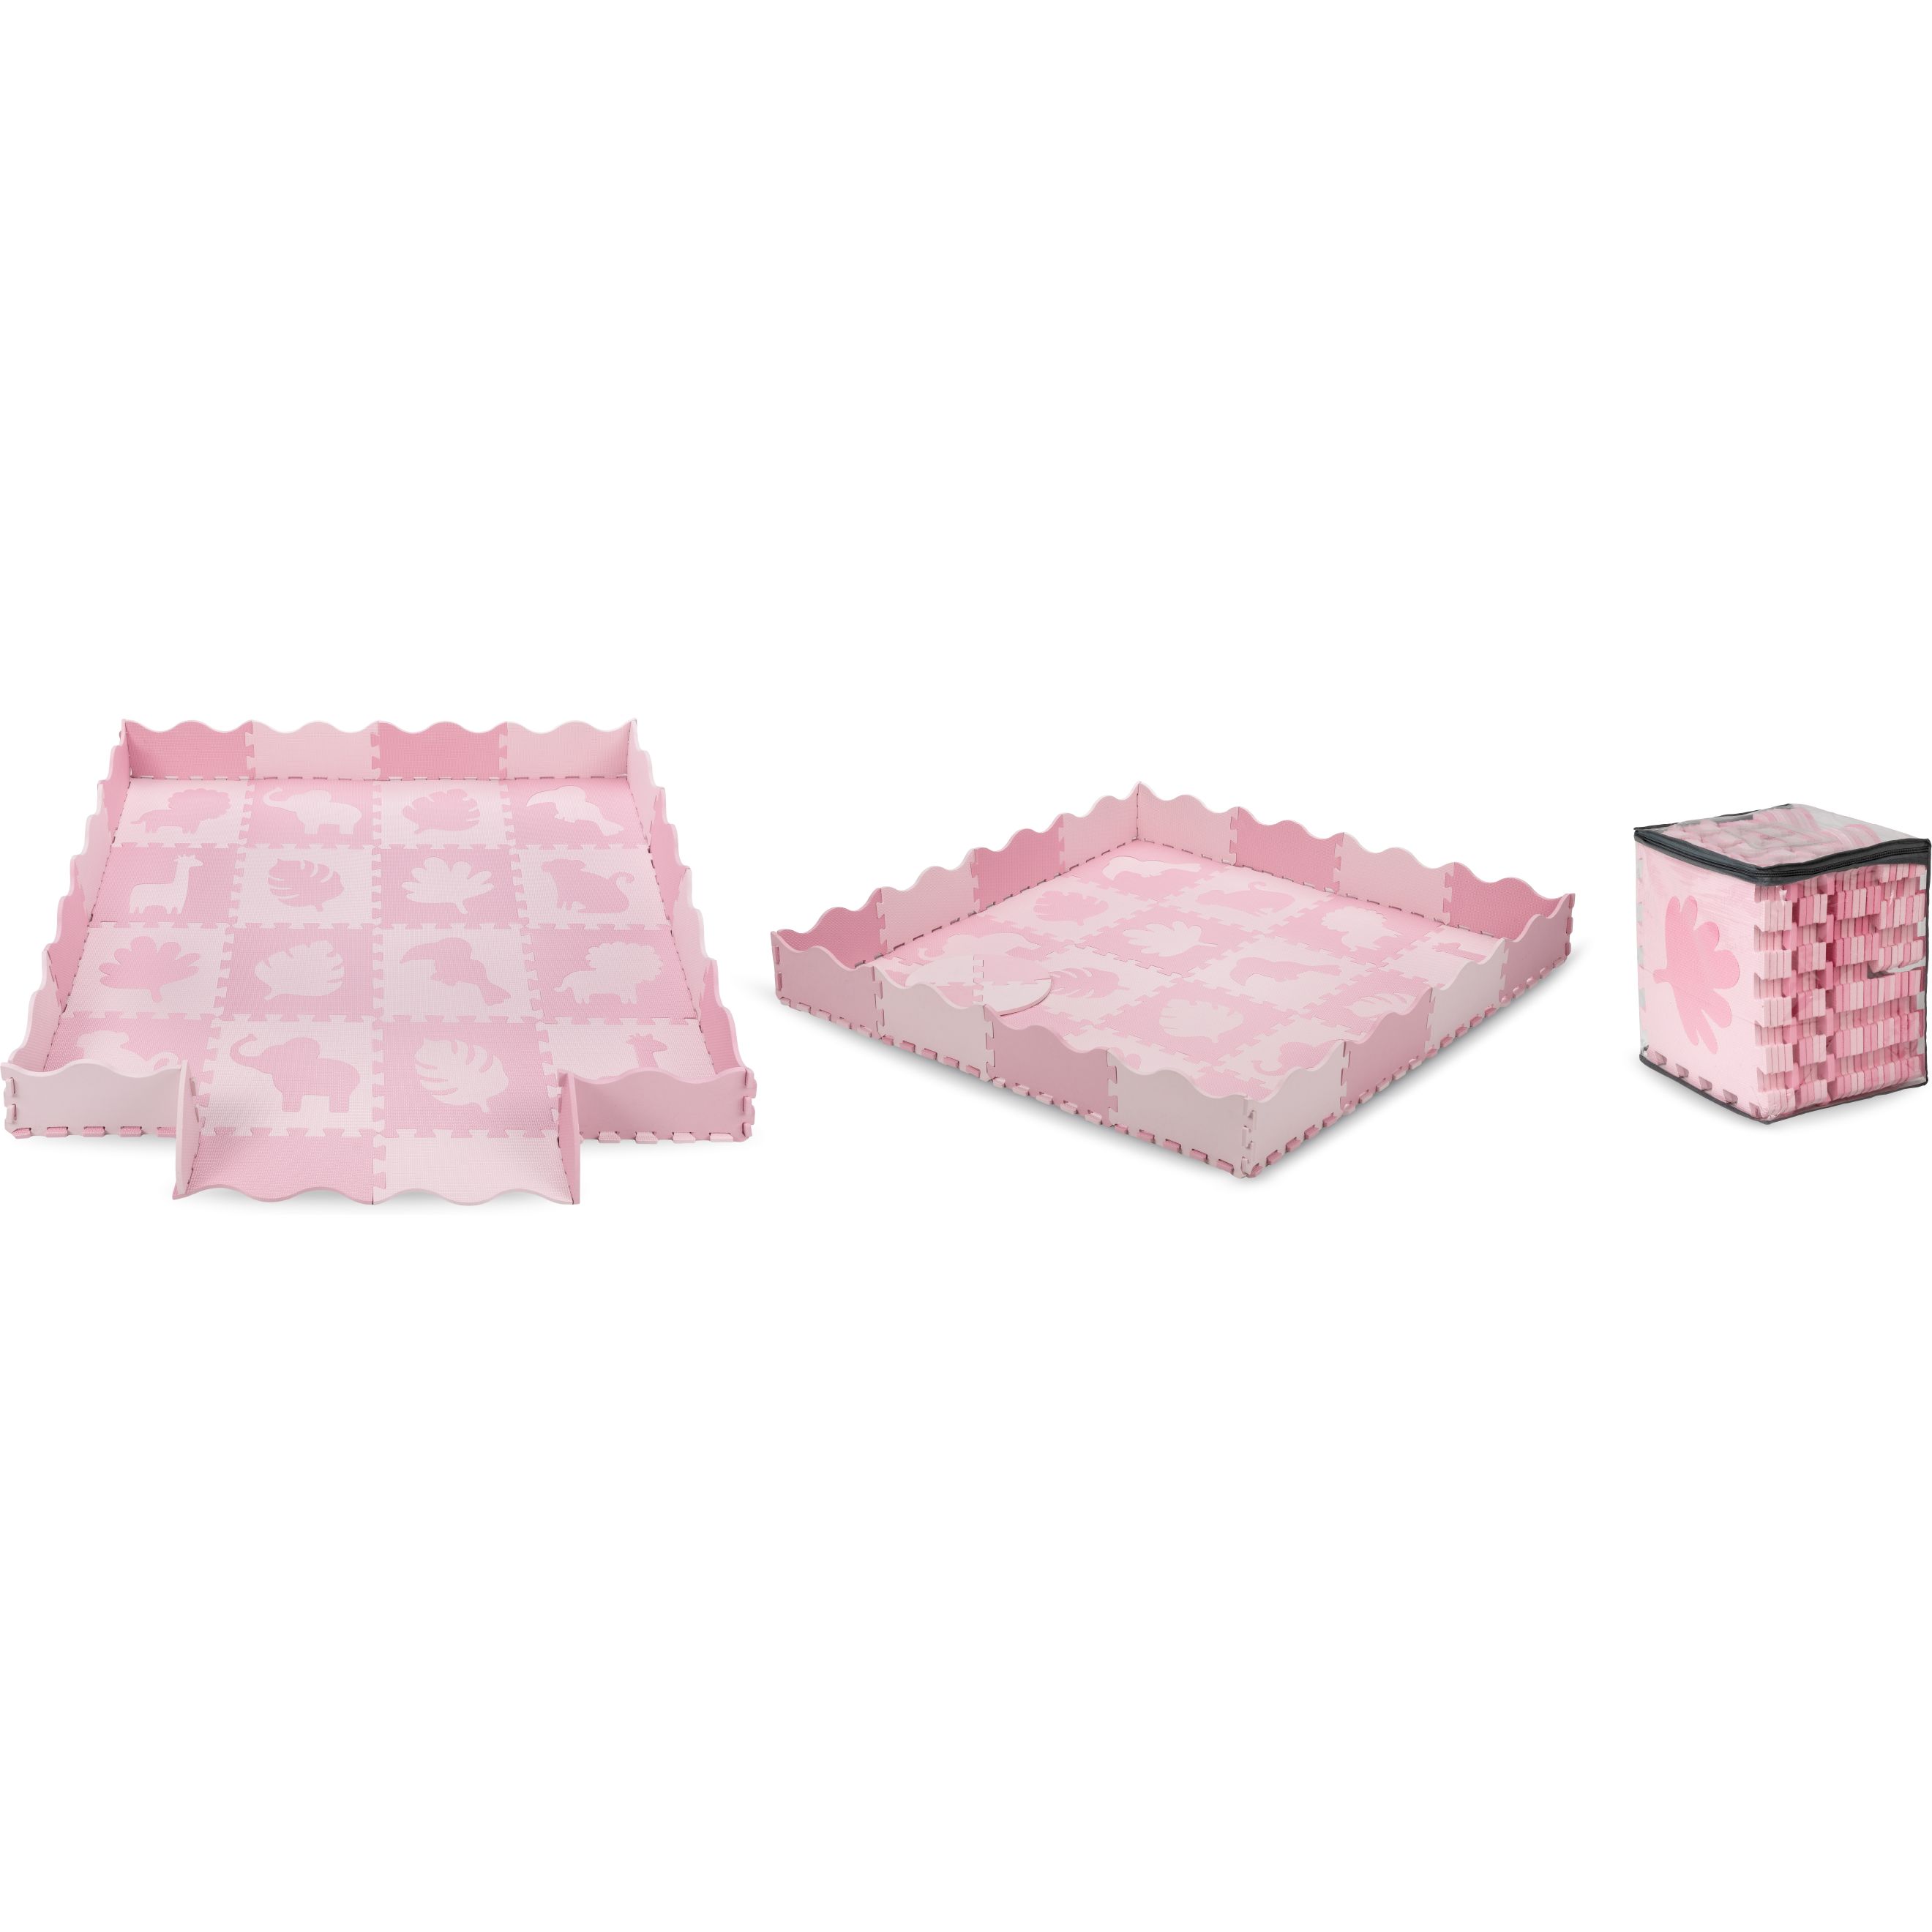 Коврик-пазл MoMi Zawi pink, розовый, 150x150 см (MAED00012) - фото 2